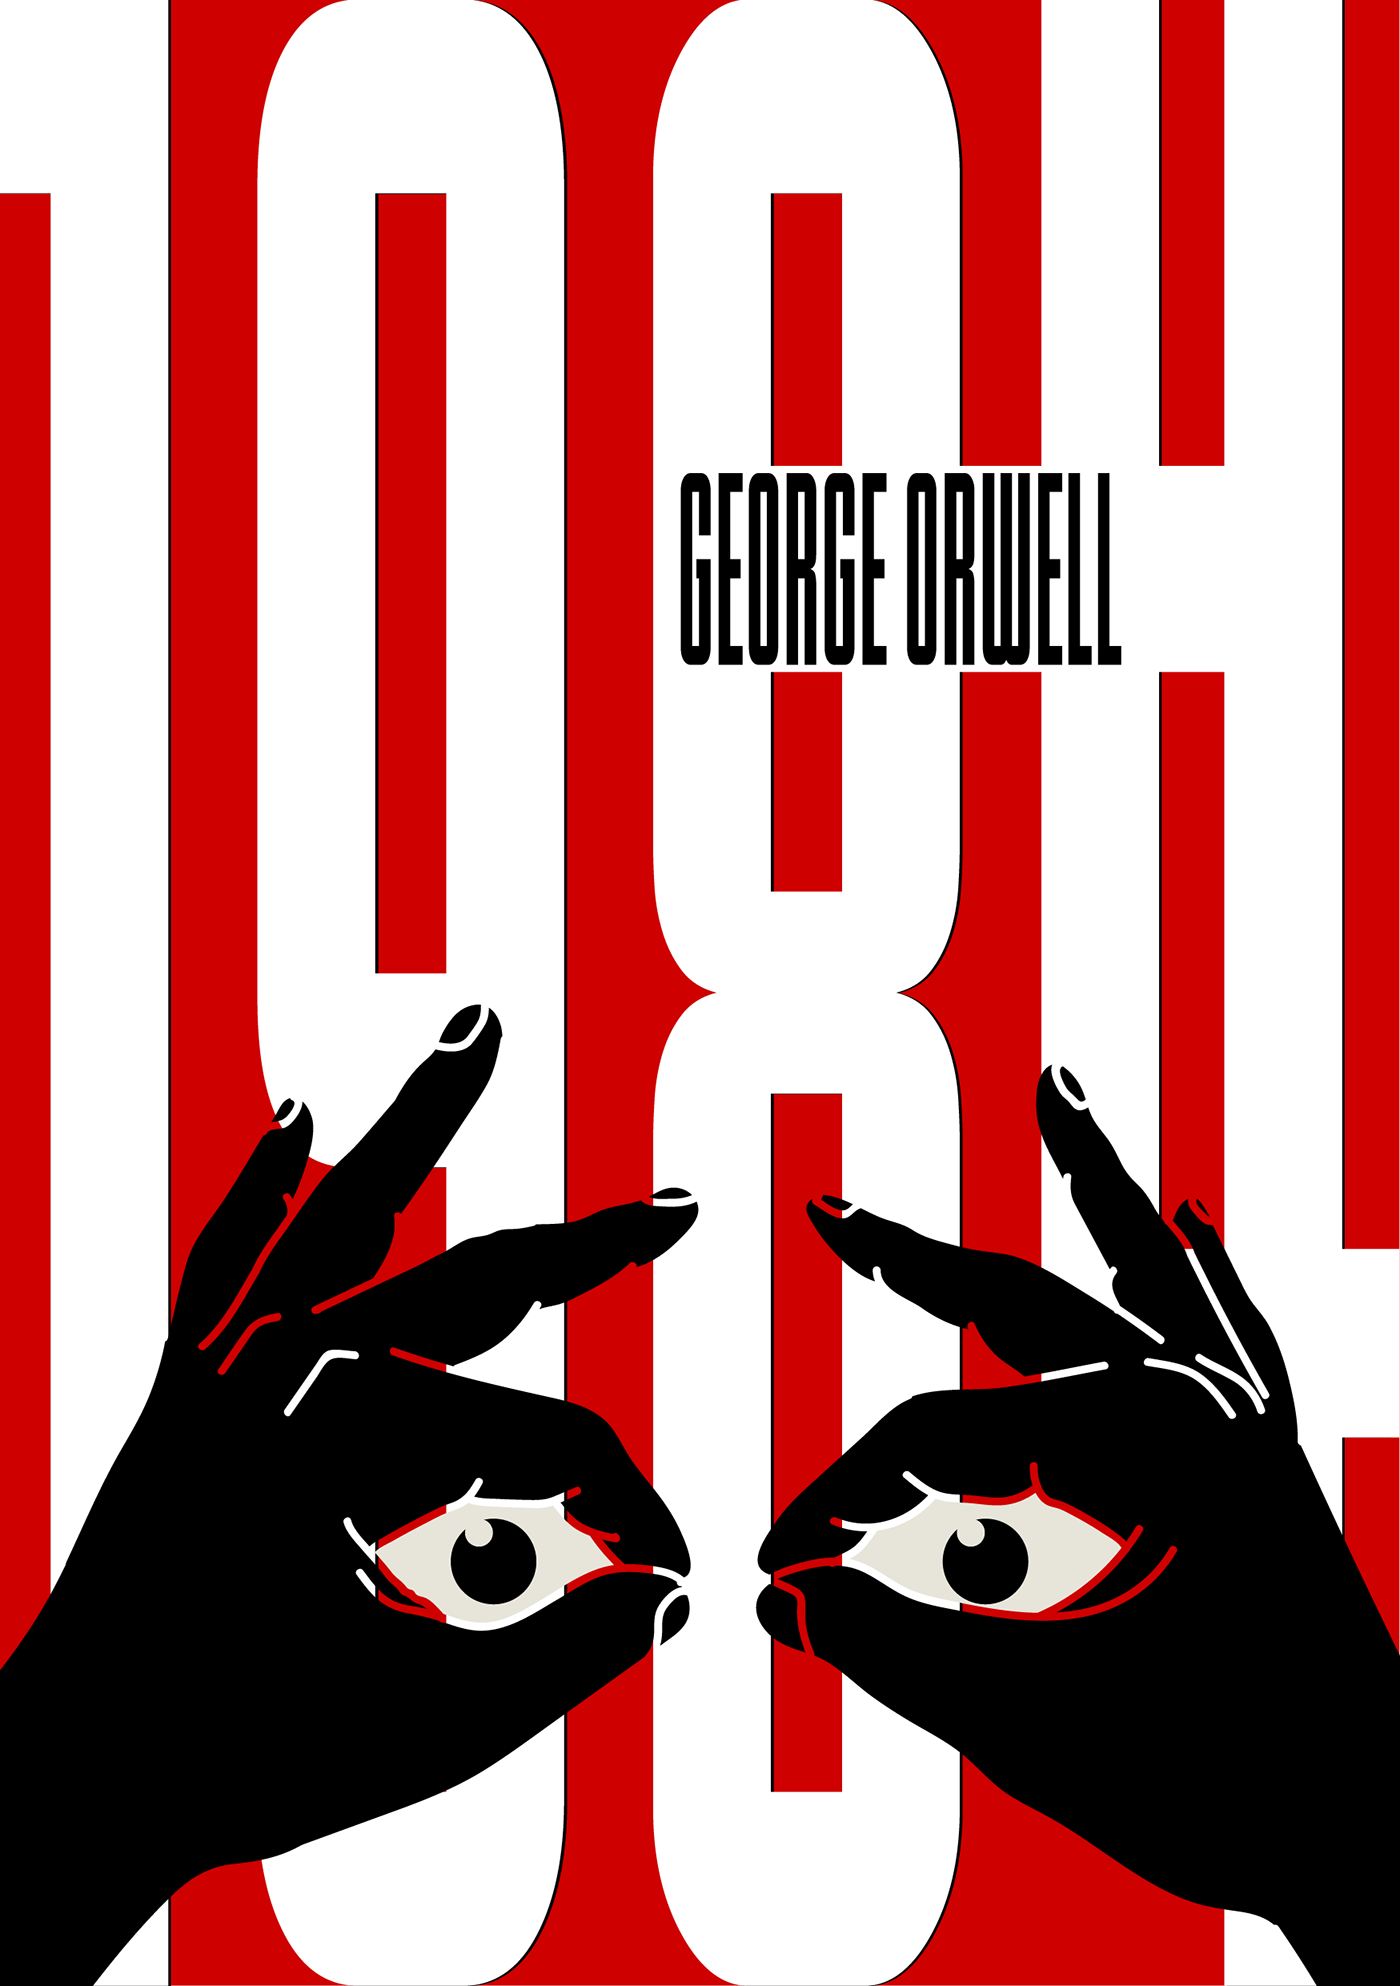 1984 george orwell book cover 1984 book eye George Orwell